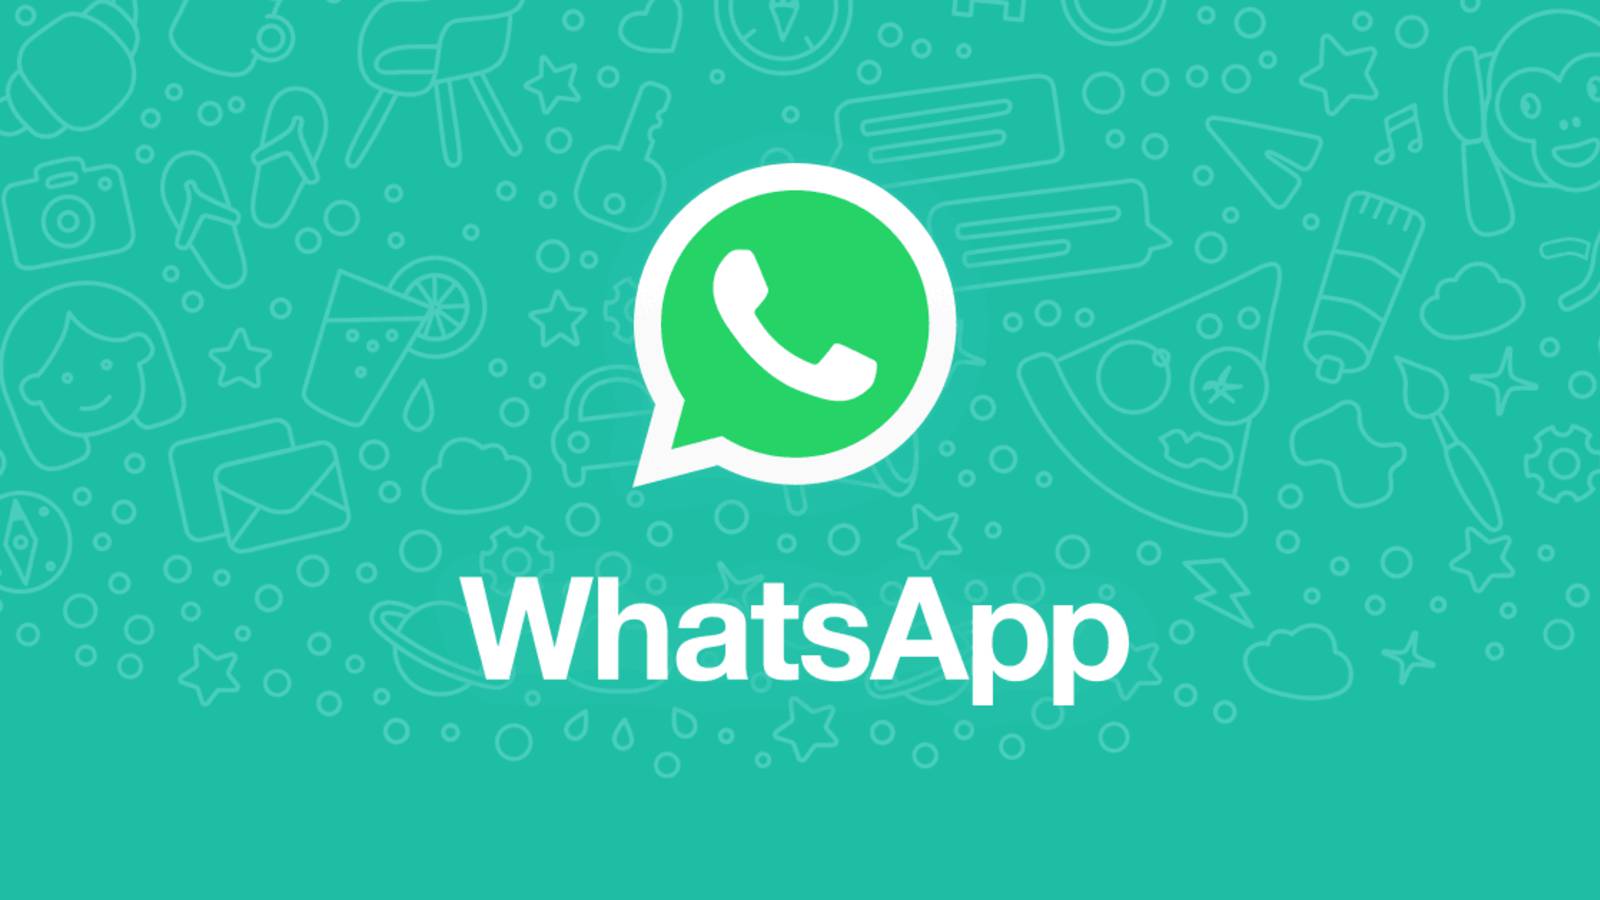 WhatsApp-Beta-Dunkelmodus